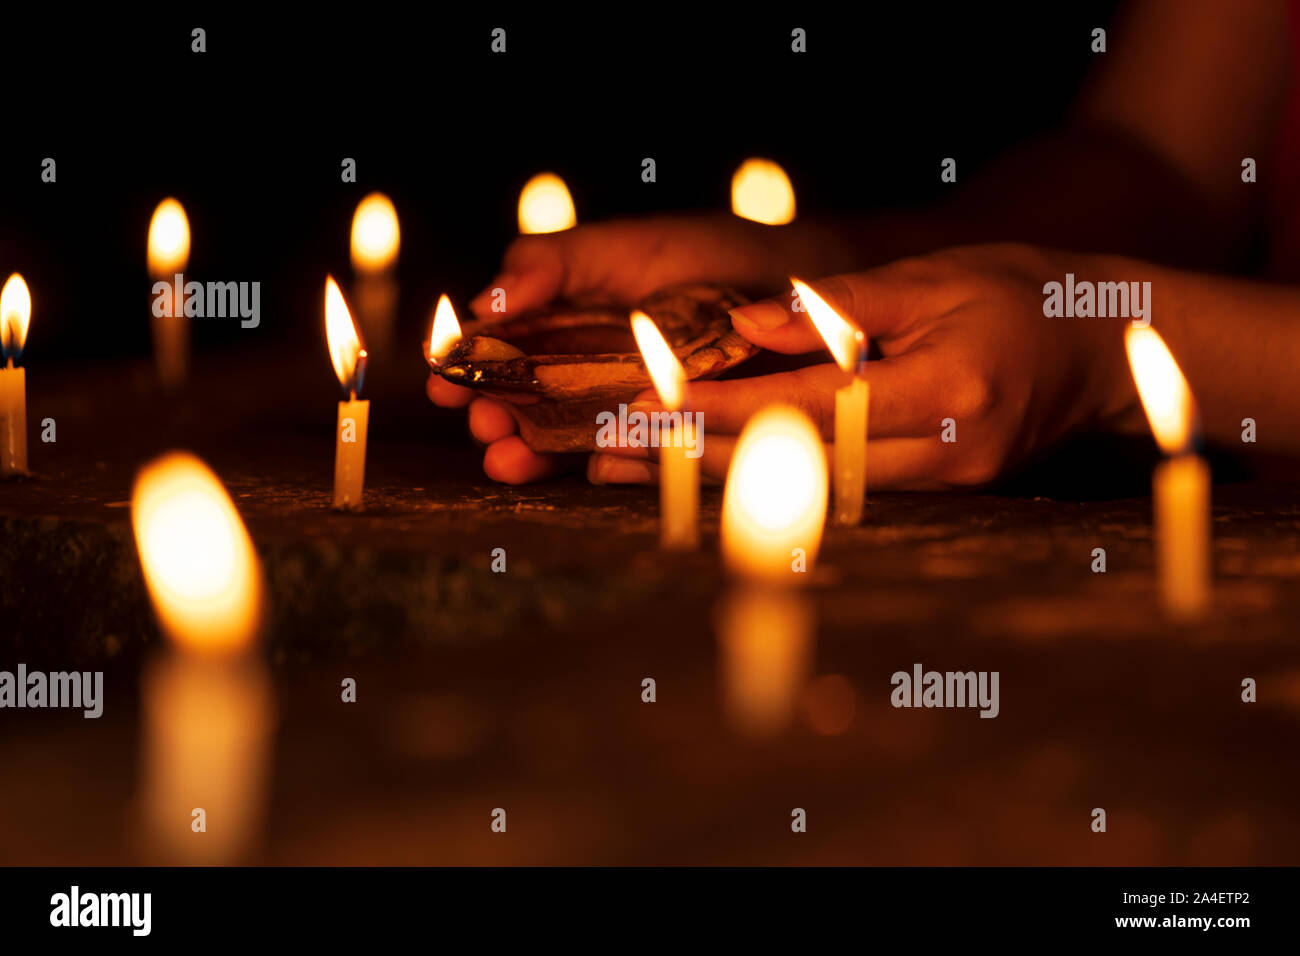 Femme mains tenant un Diya, éclairage des bougies dans les célébrations du Diwali nuit au temple. Concept d'arrière-plan pour les rituels hindous indiens, de culte, de croire Banque D'Images